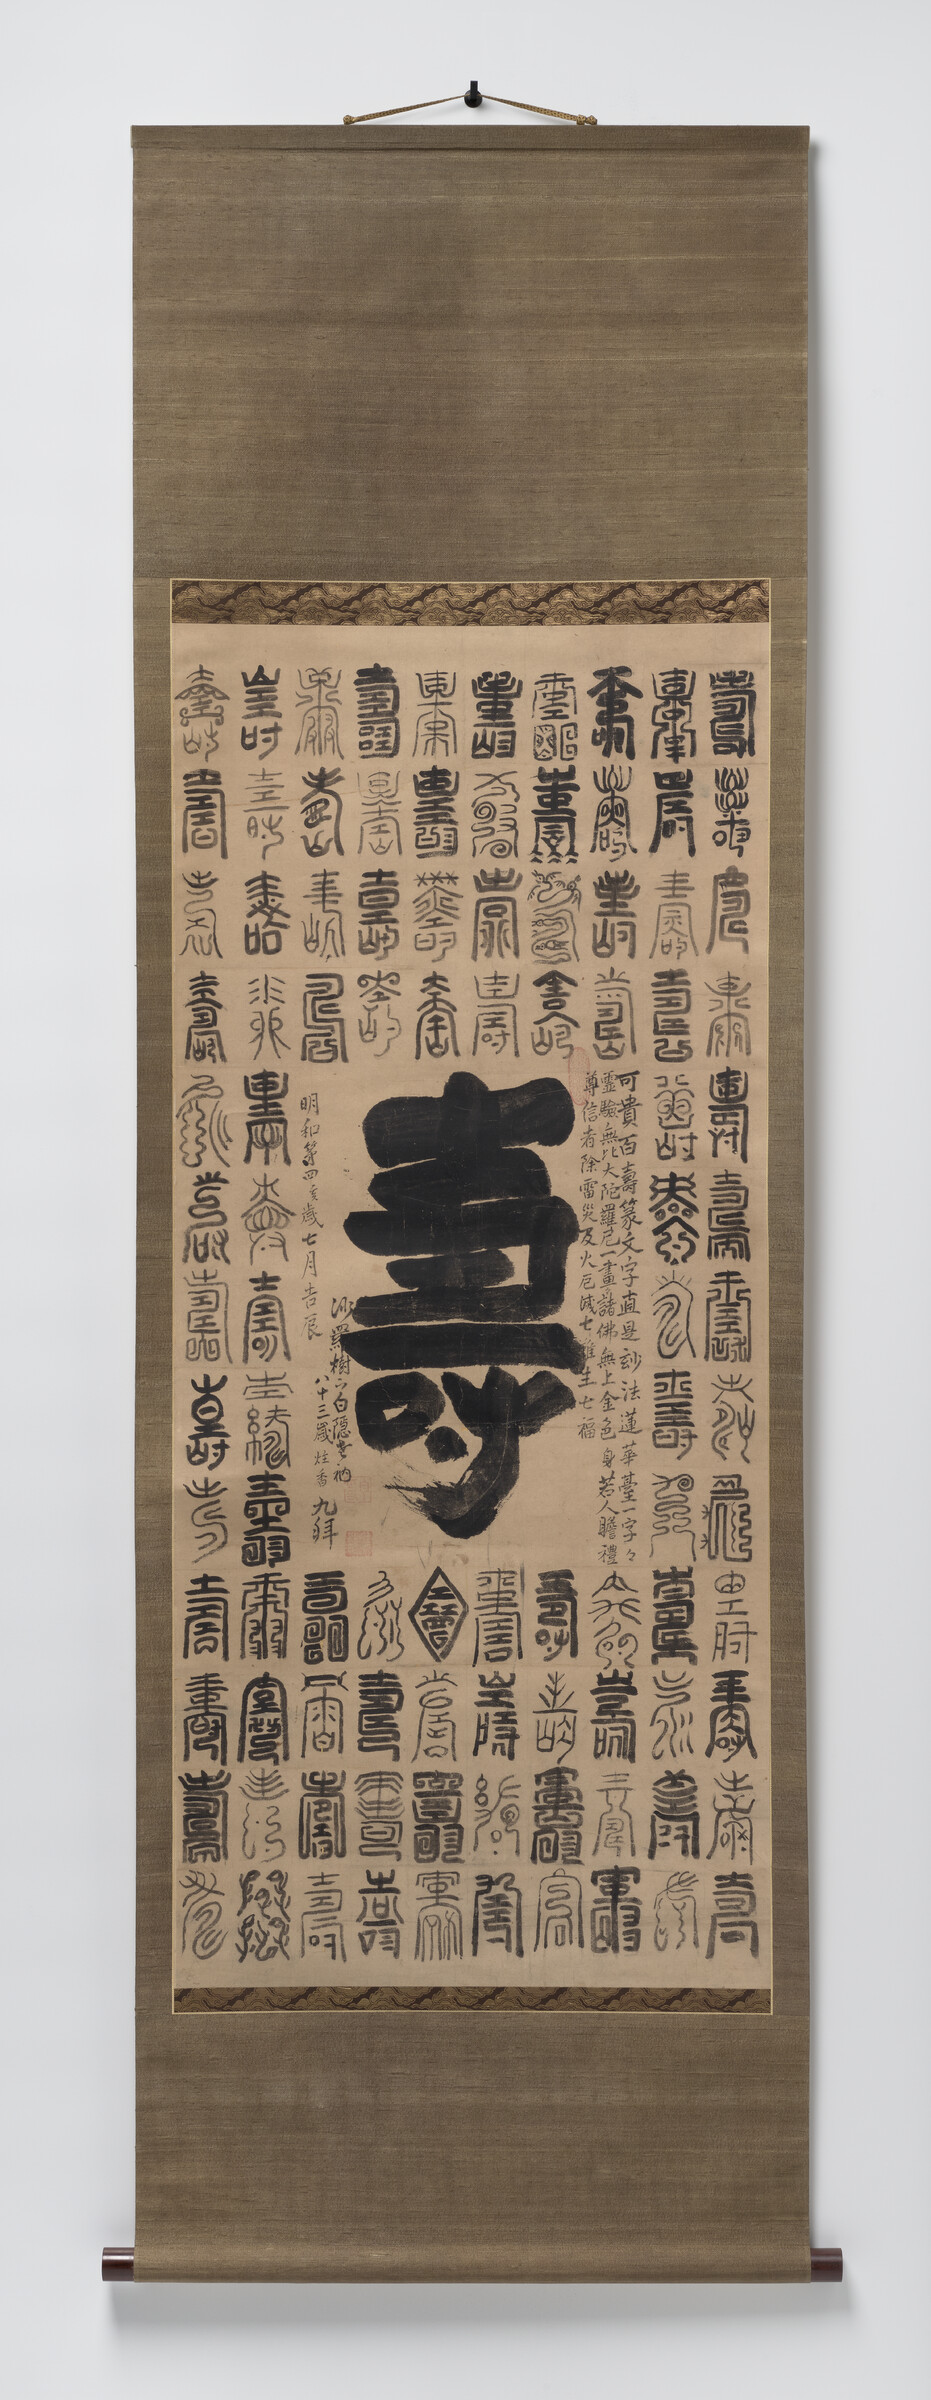 Online Gallery Talk | Zenga: Filling in the Lines of Japanese Zen